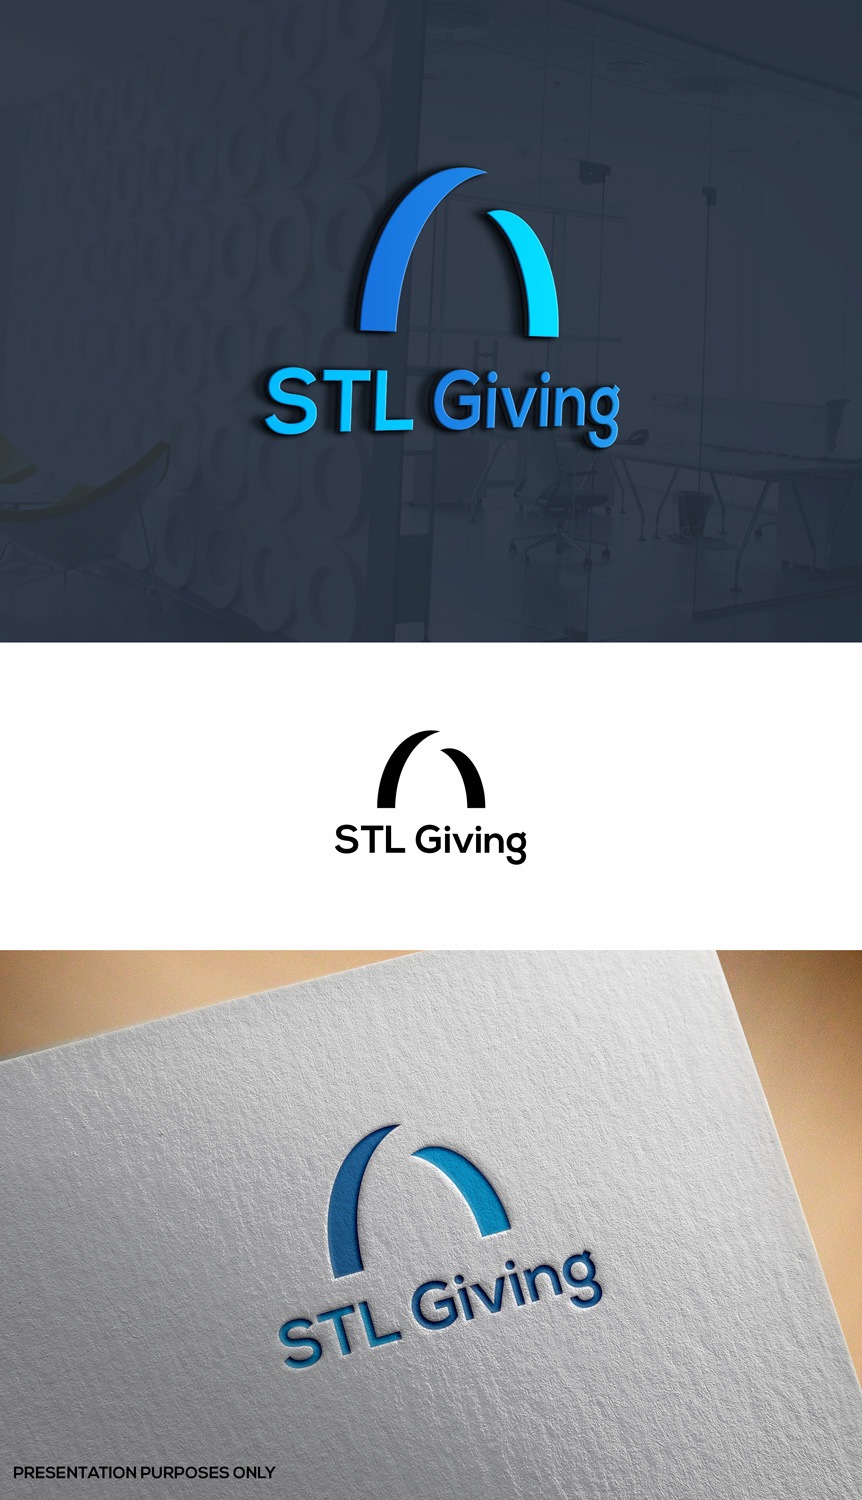 STL捐赠帮助非营利捐赠俱乐部